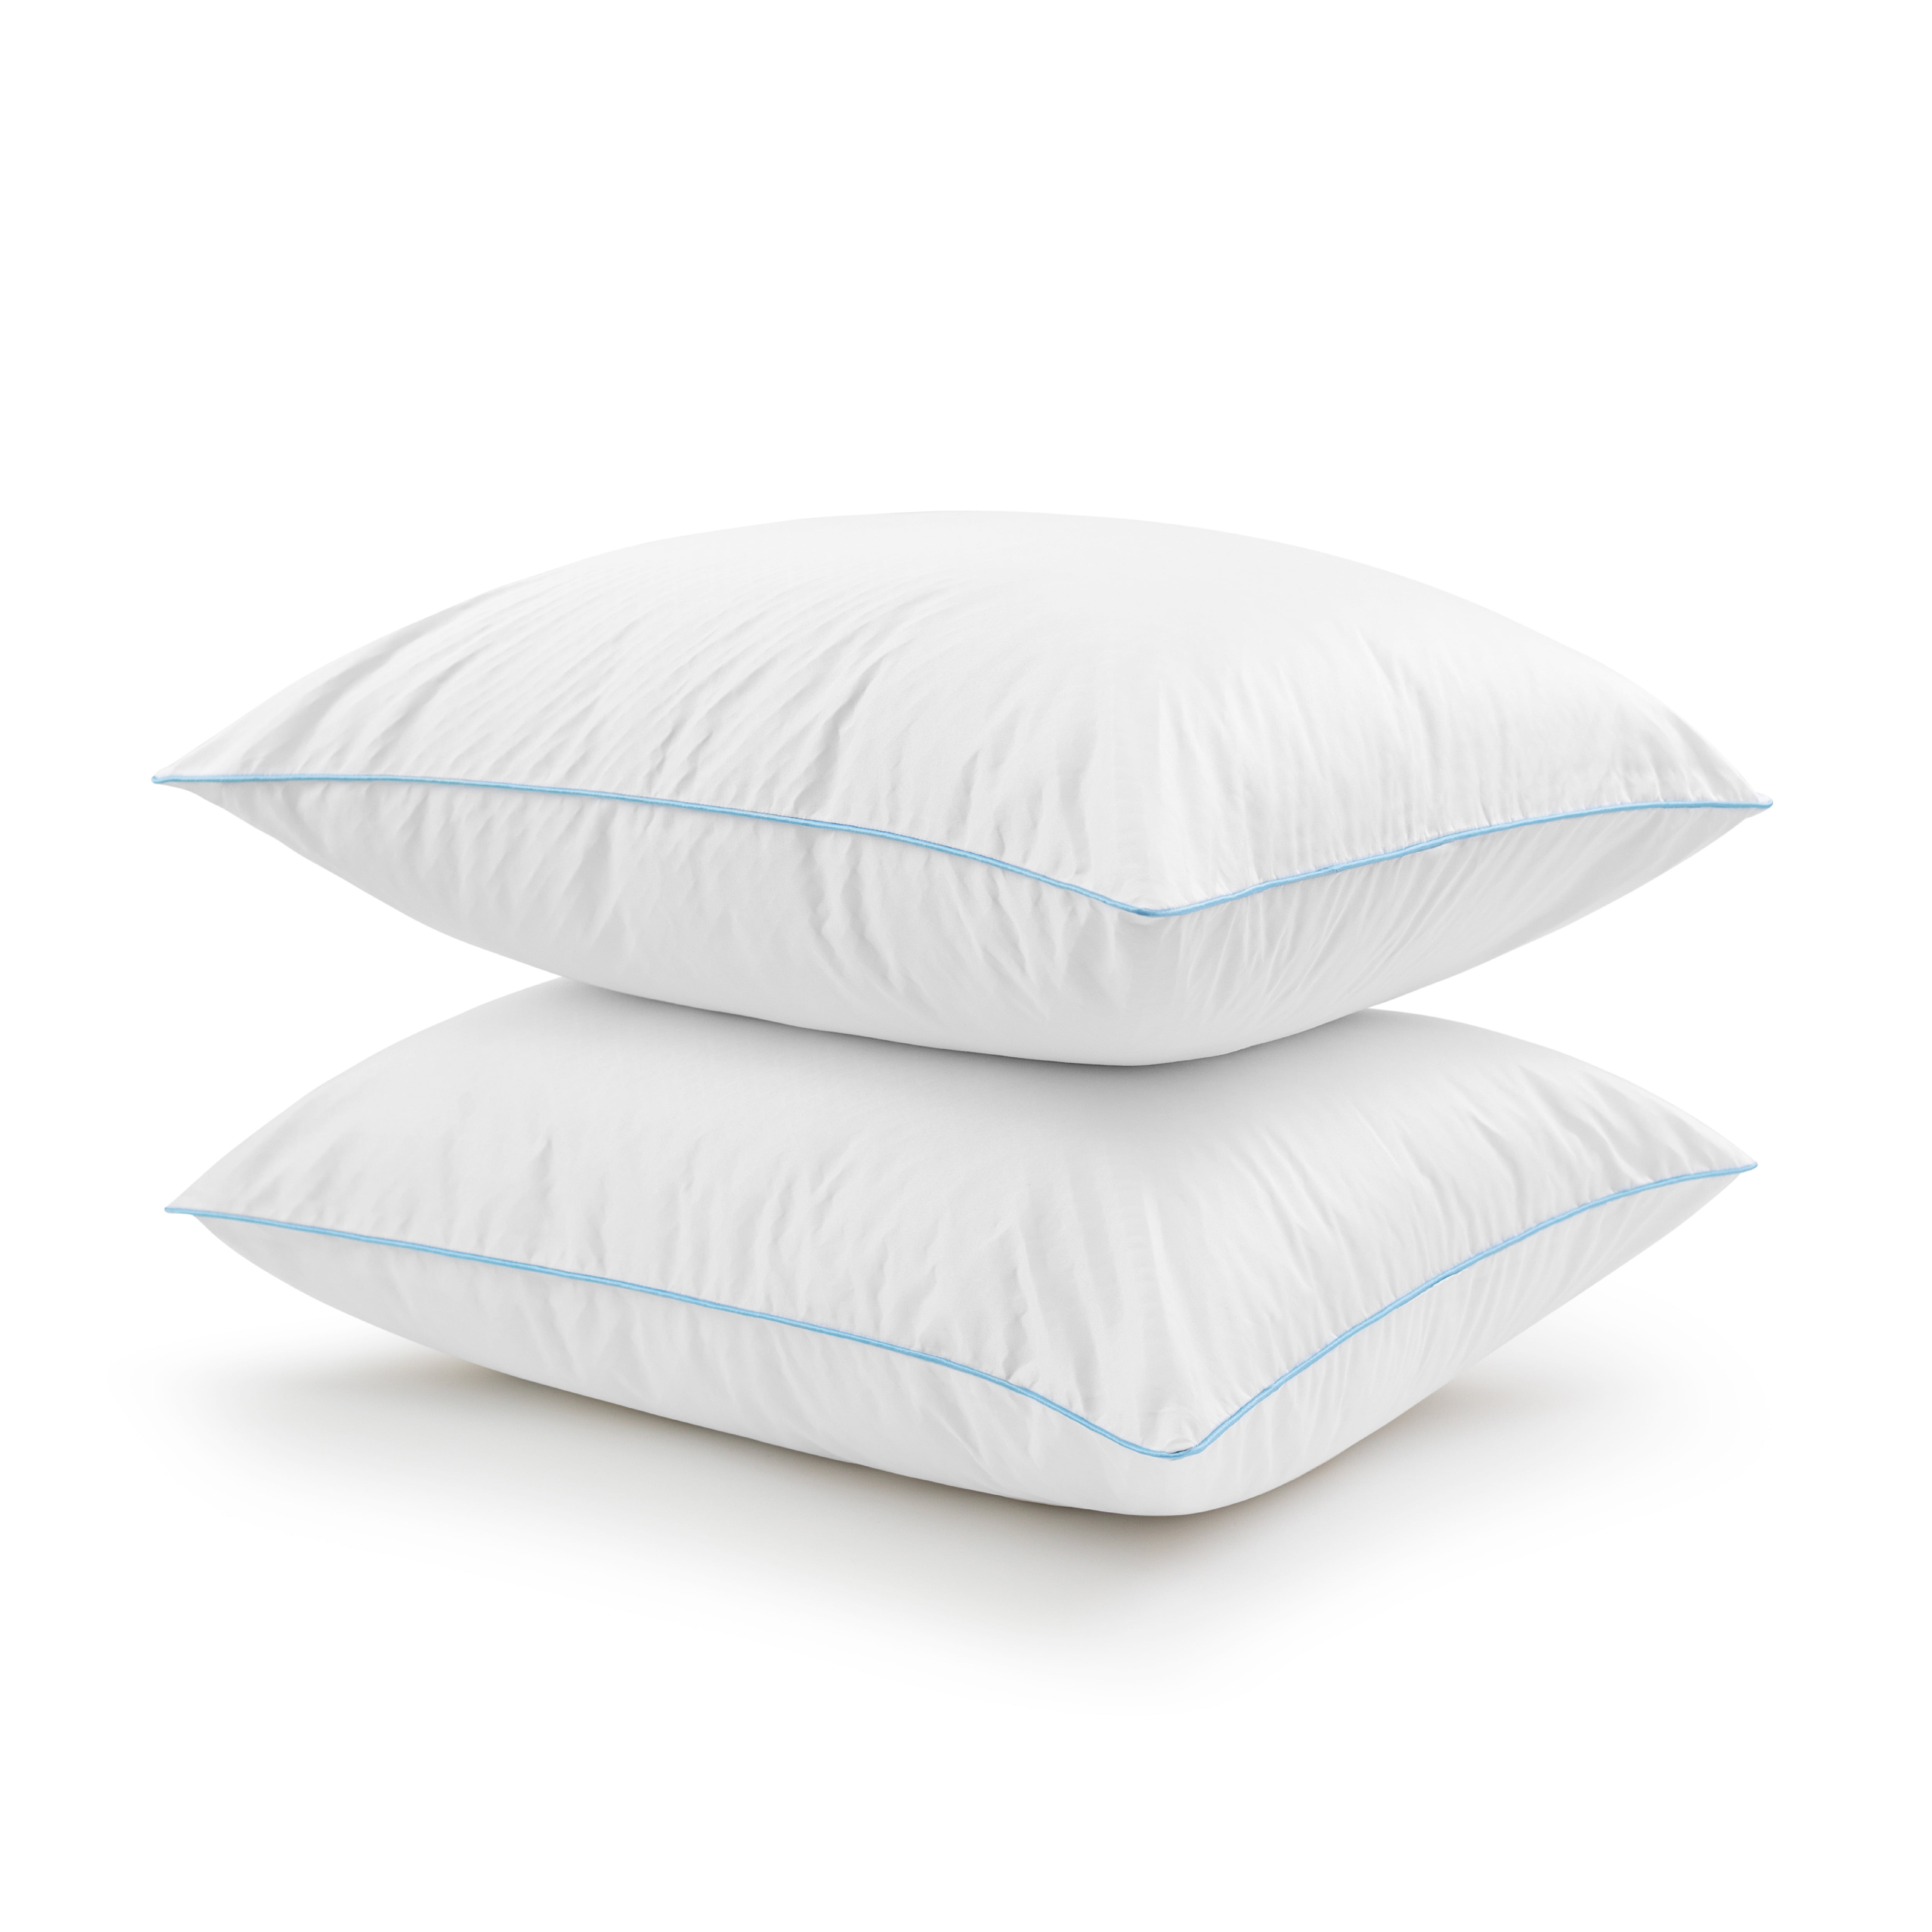 Beautyrest Beyond Cool Bed Pillow 2 Pack, Standard/Queen, Cooling, Down Alternative, Size: Standard Queen